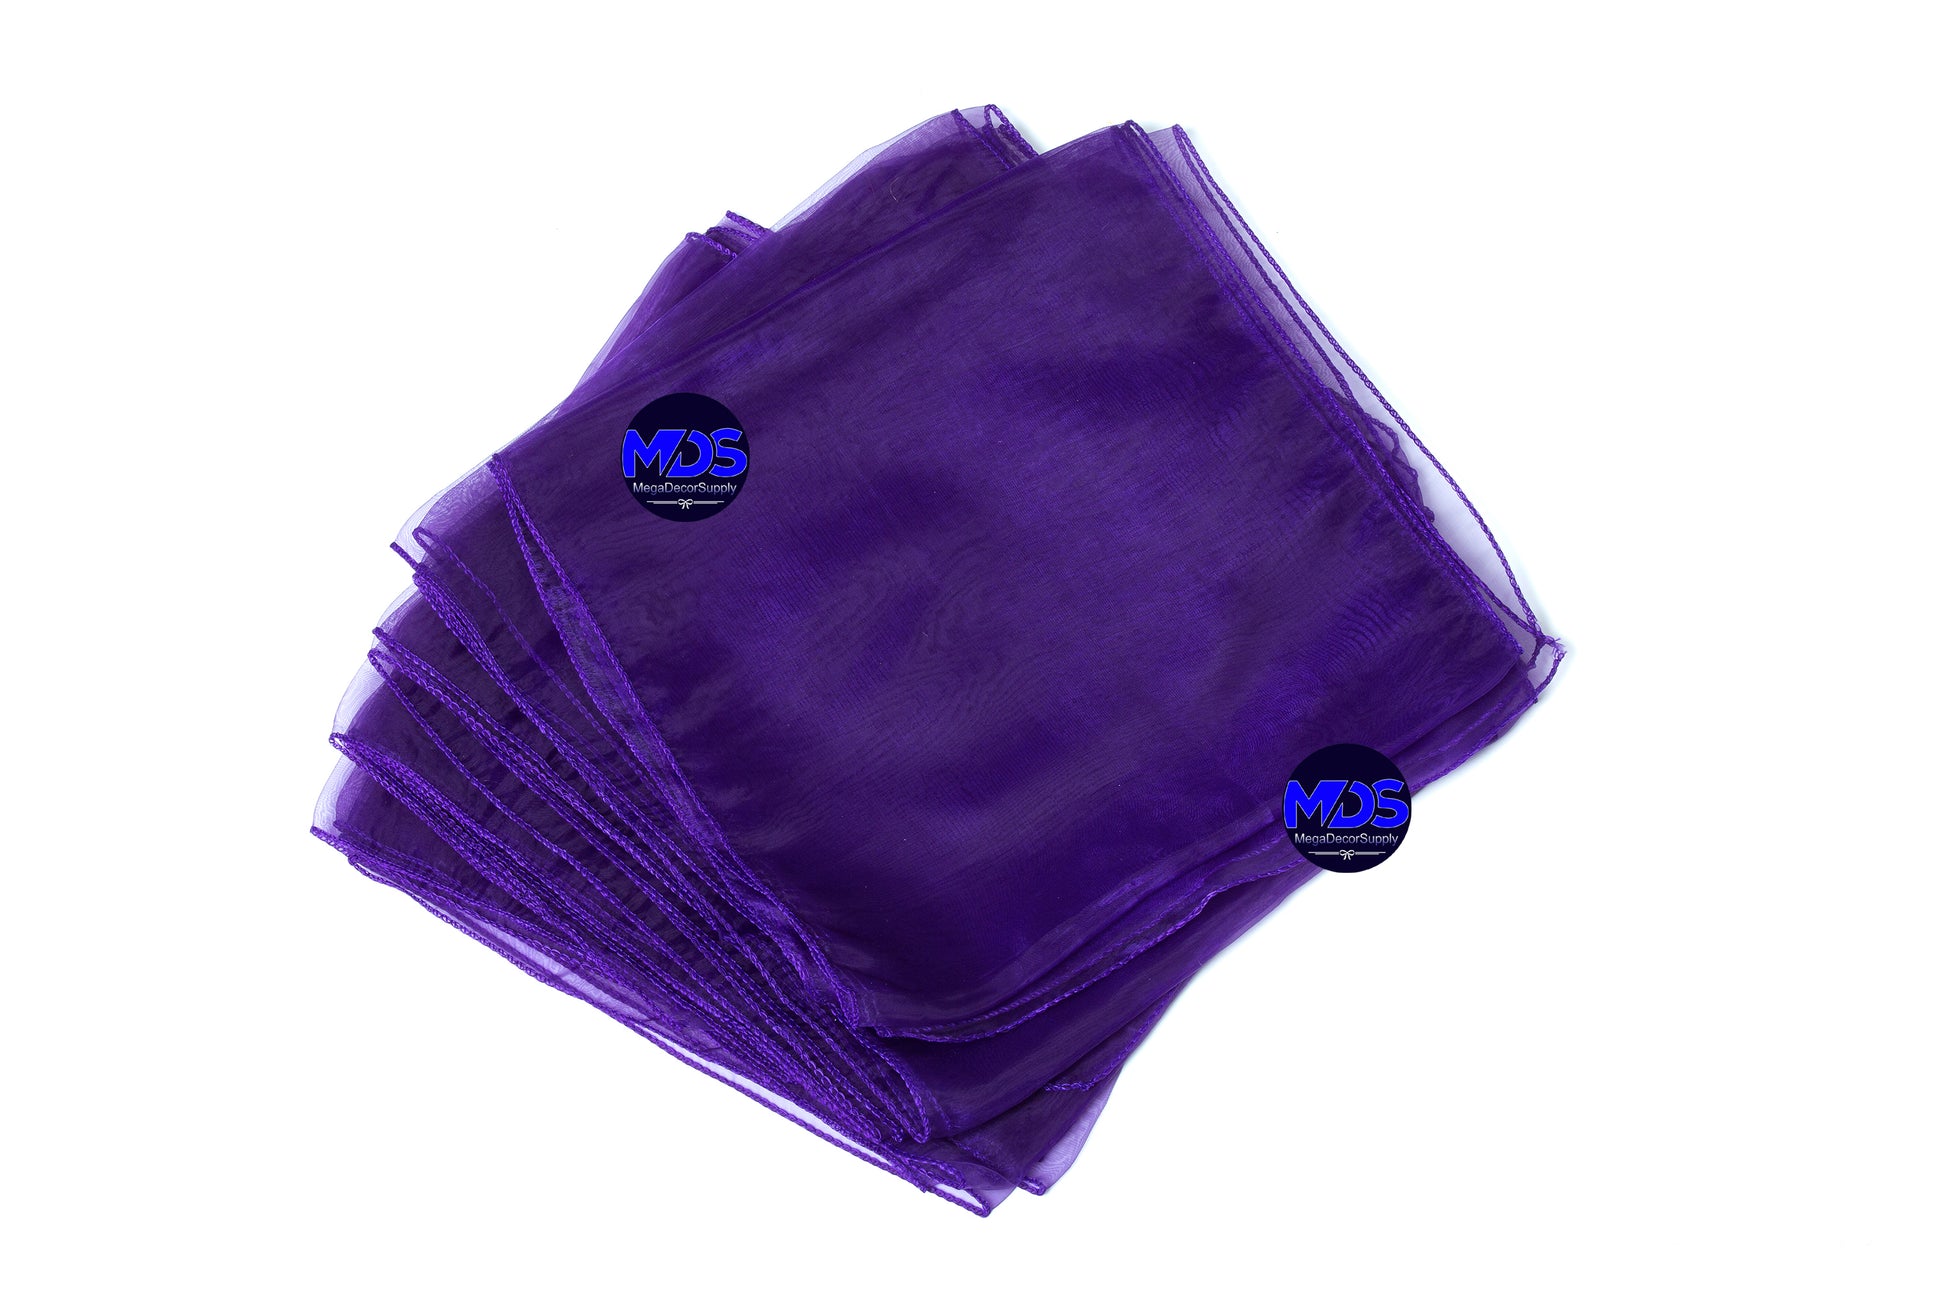 Cadbury Purple,e164e23b-3fcf-416d-a519-79df81ad5401